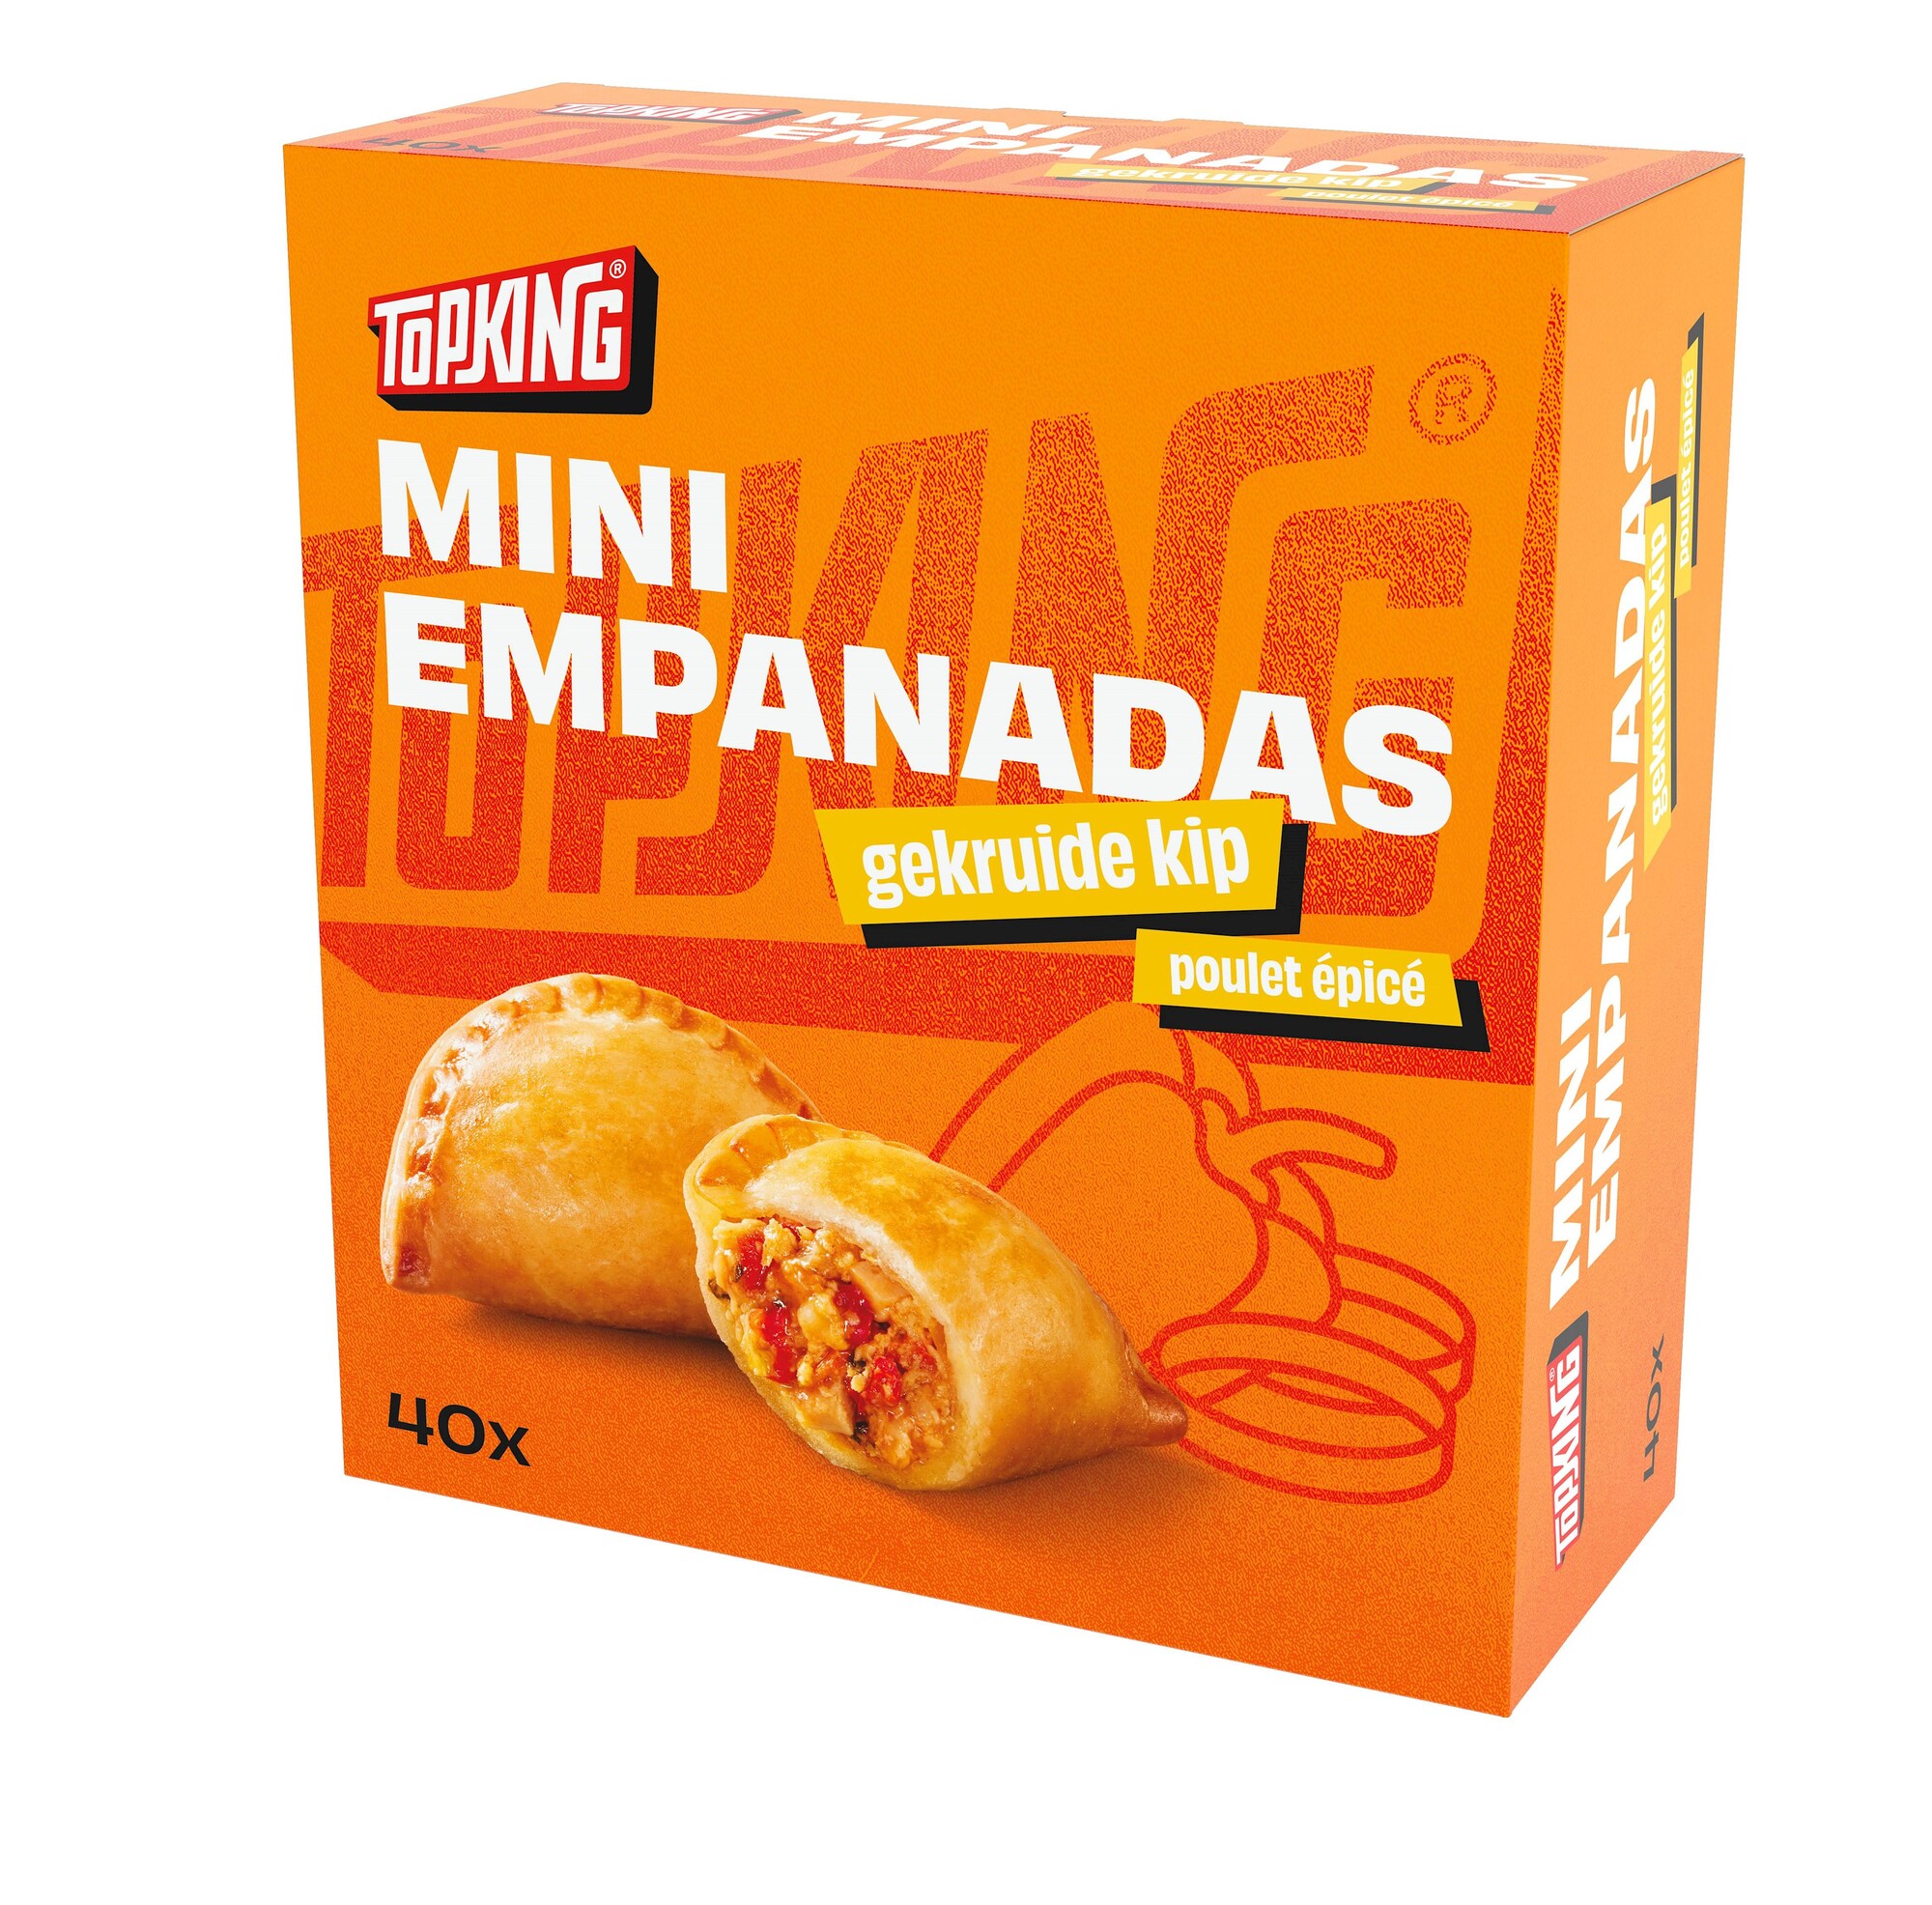 77739 Mini empanadas gekruide kip 40 stuks